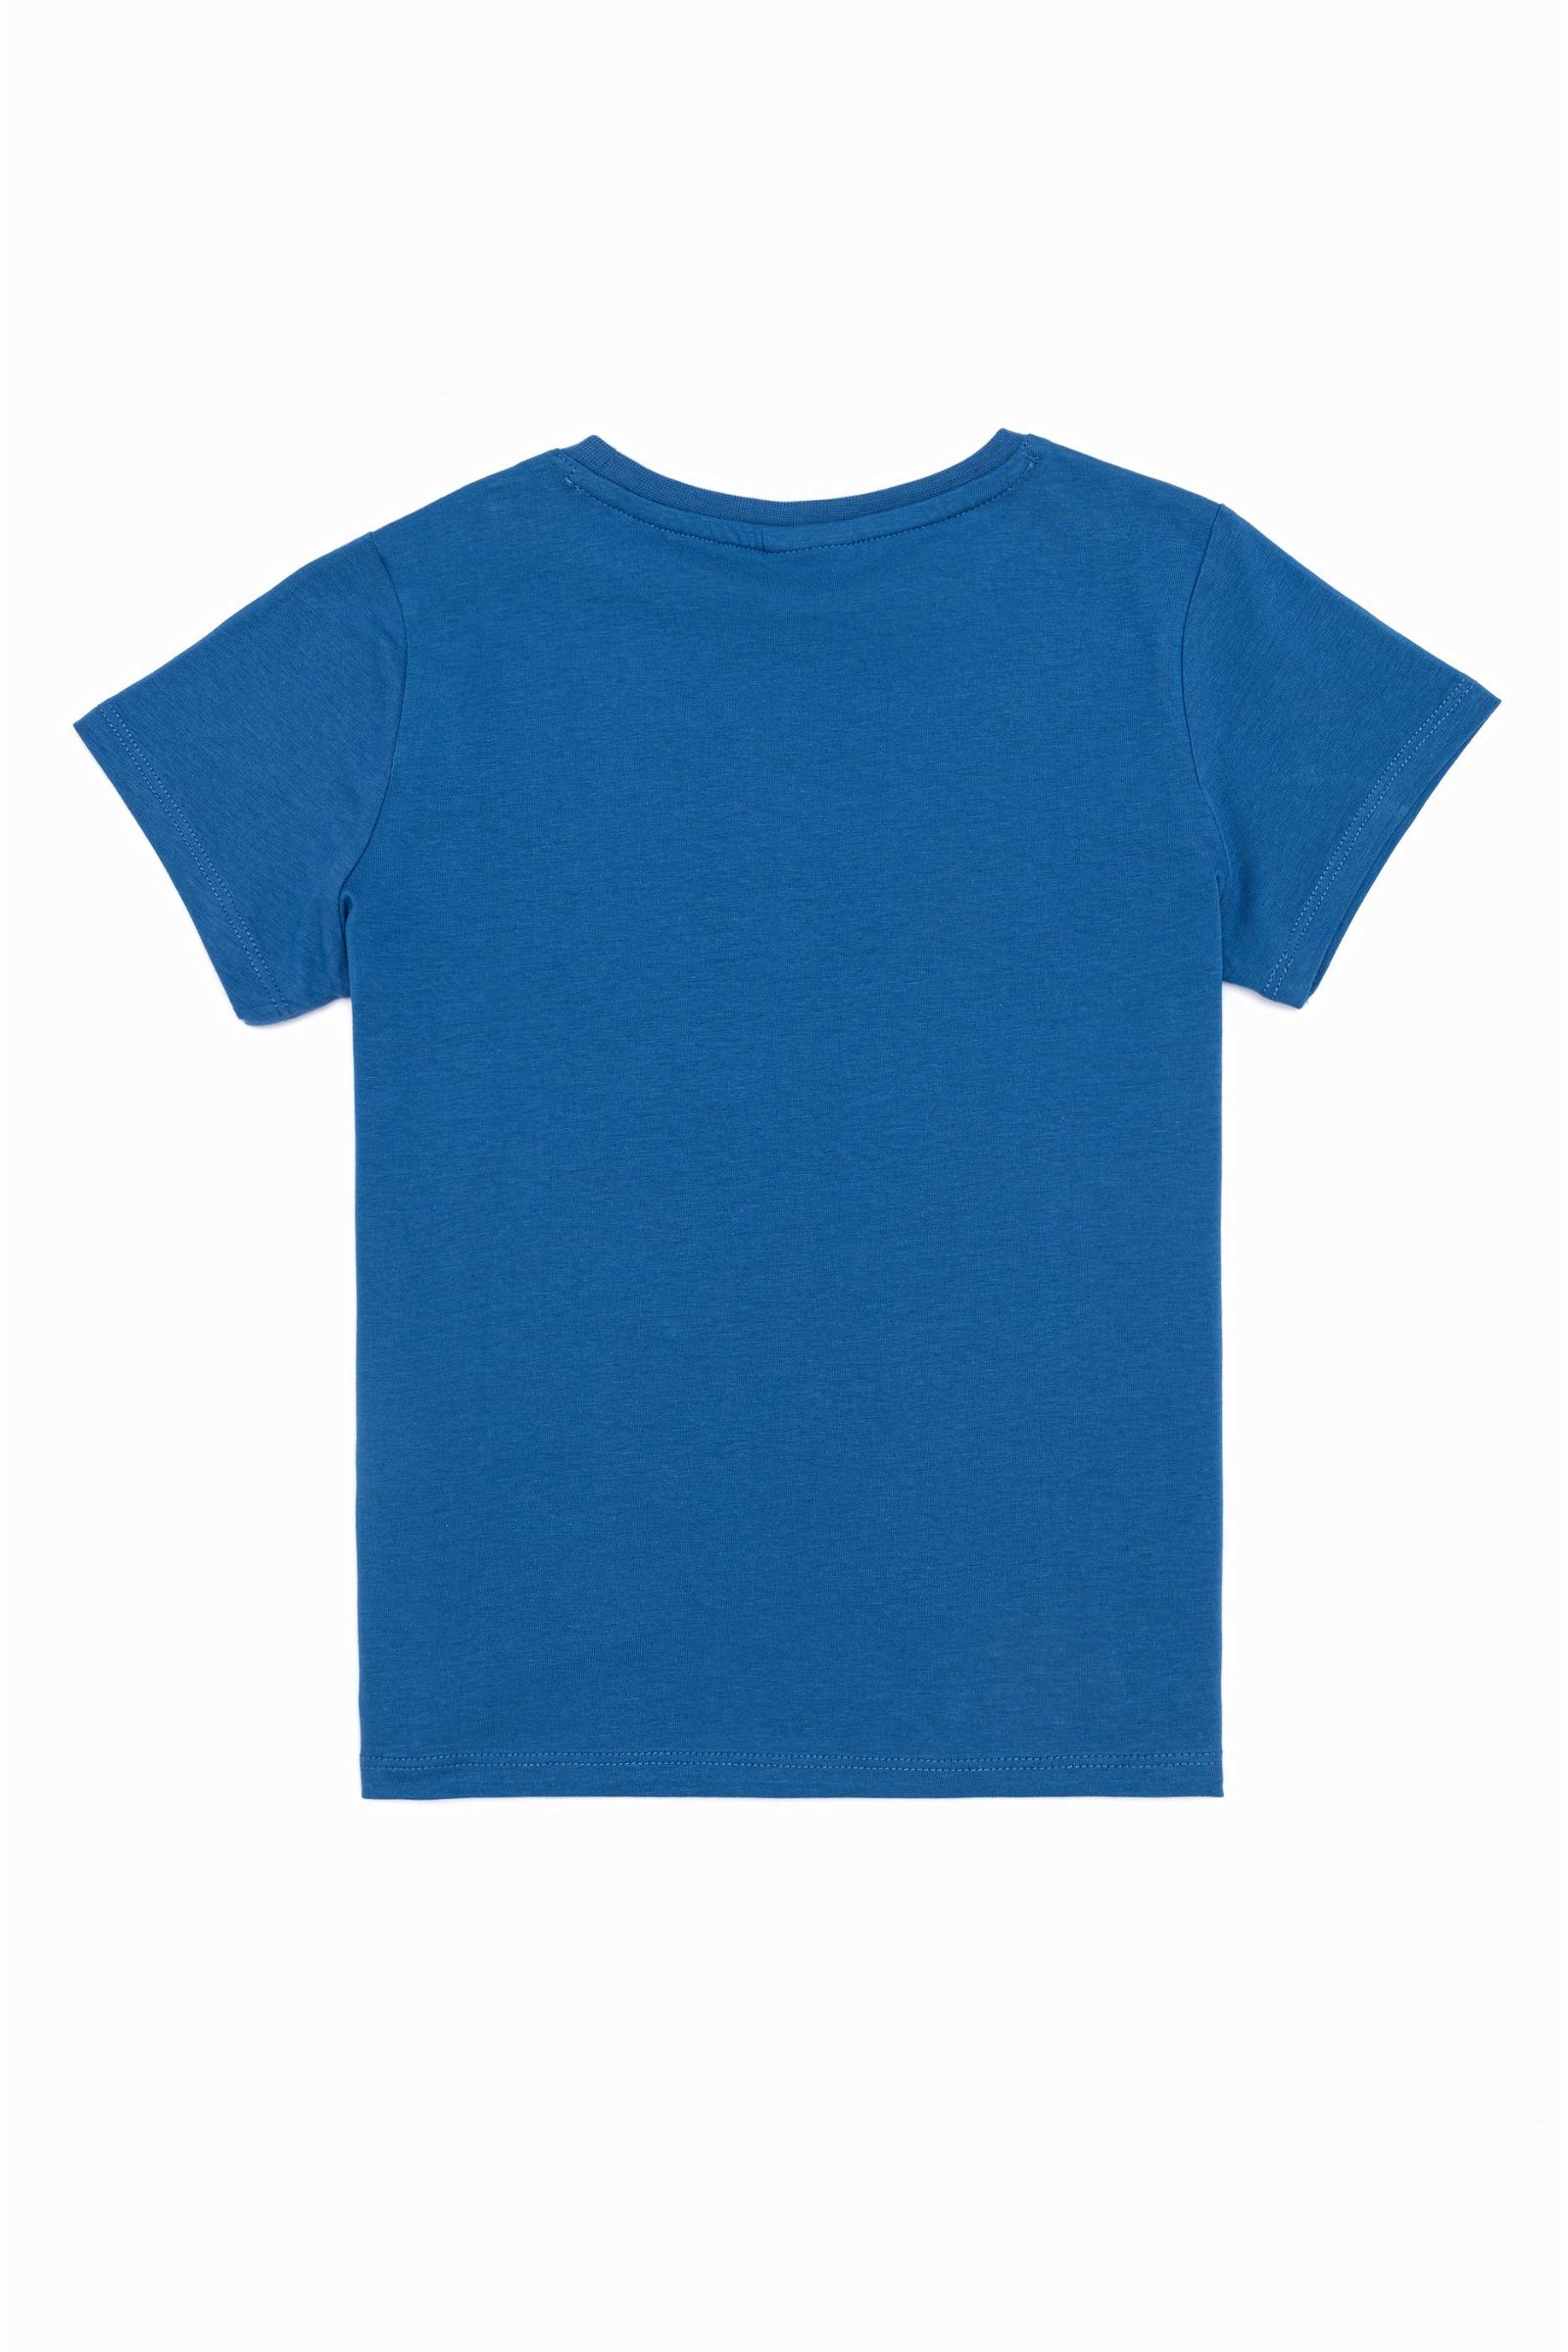 Erkek Çocuk Kobalt Mavisi Bisiklet Yaka Tişört